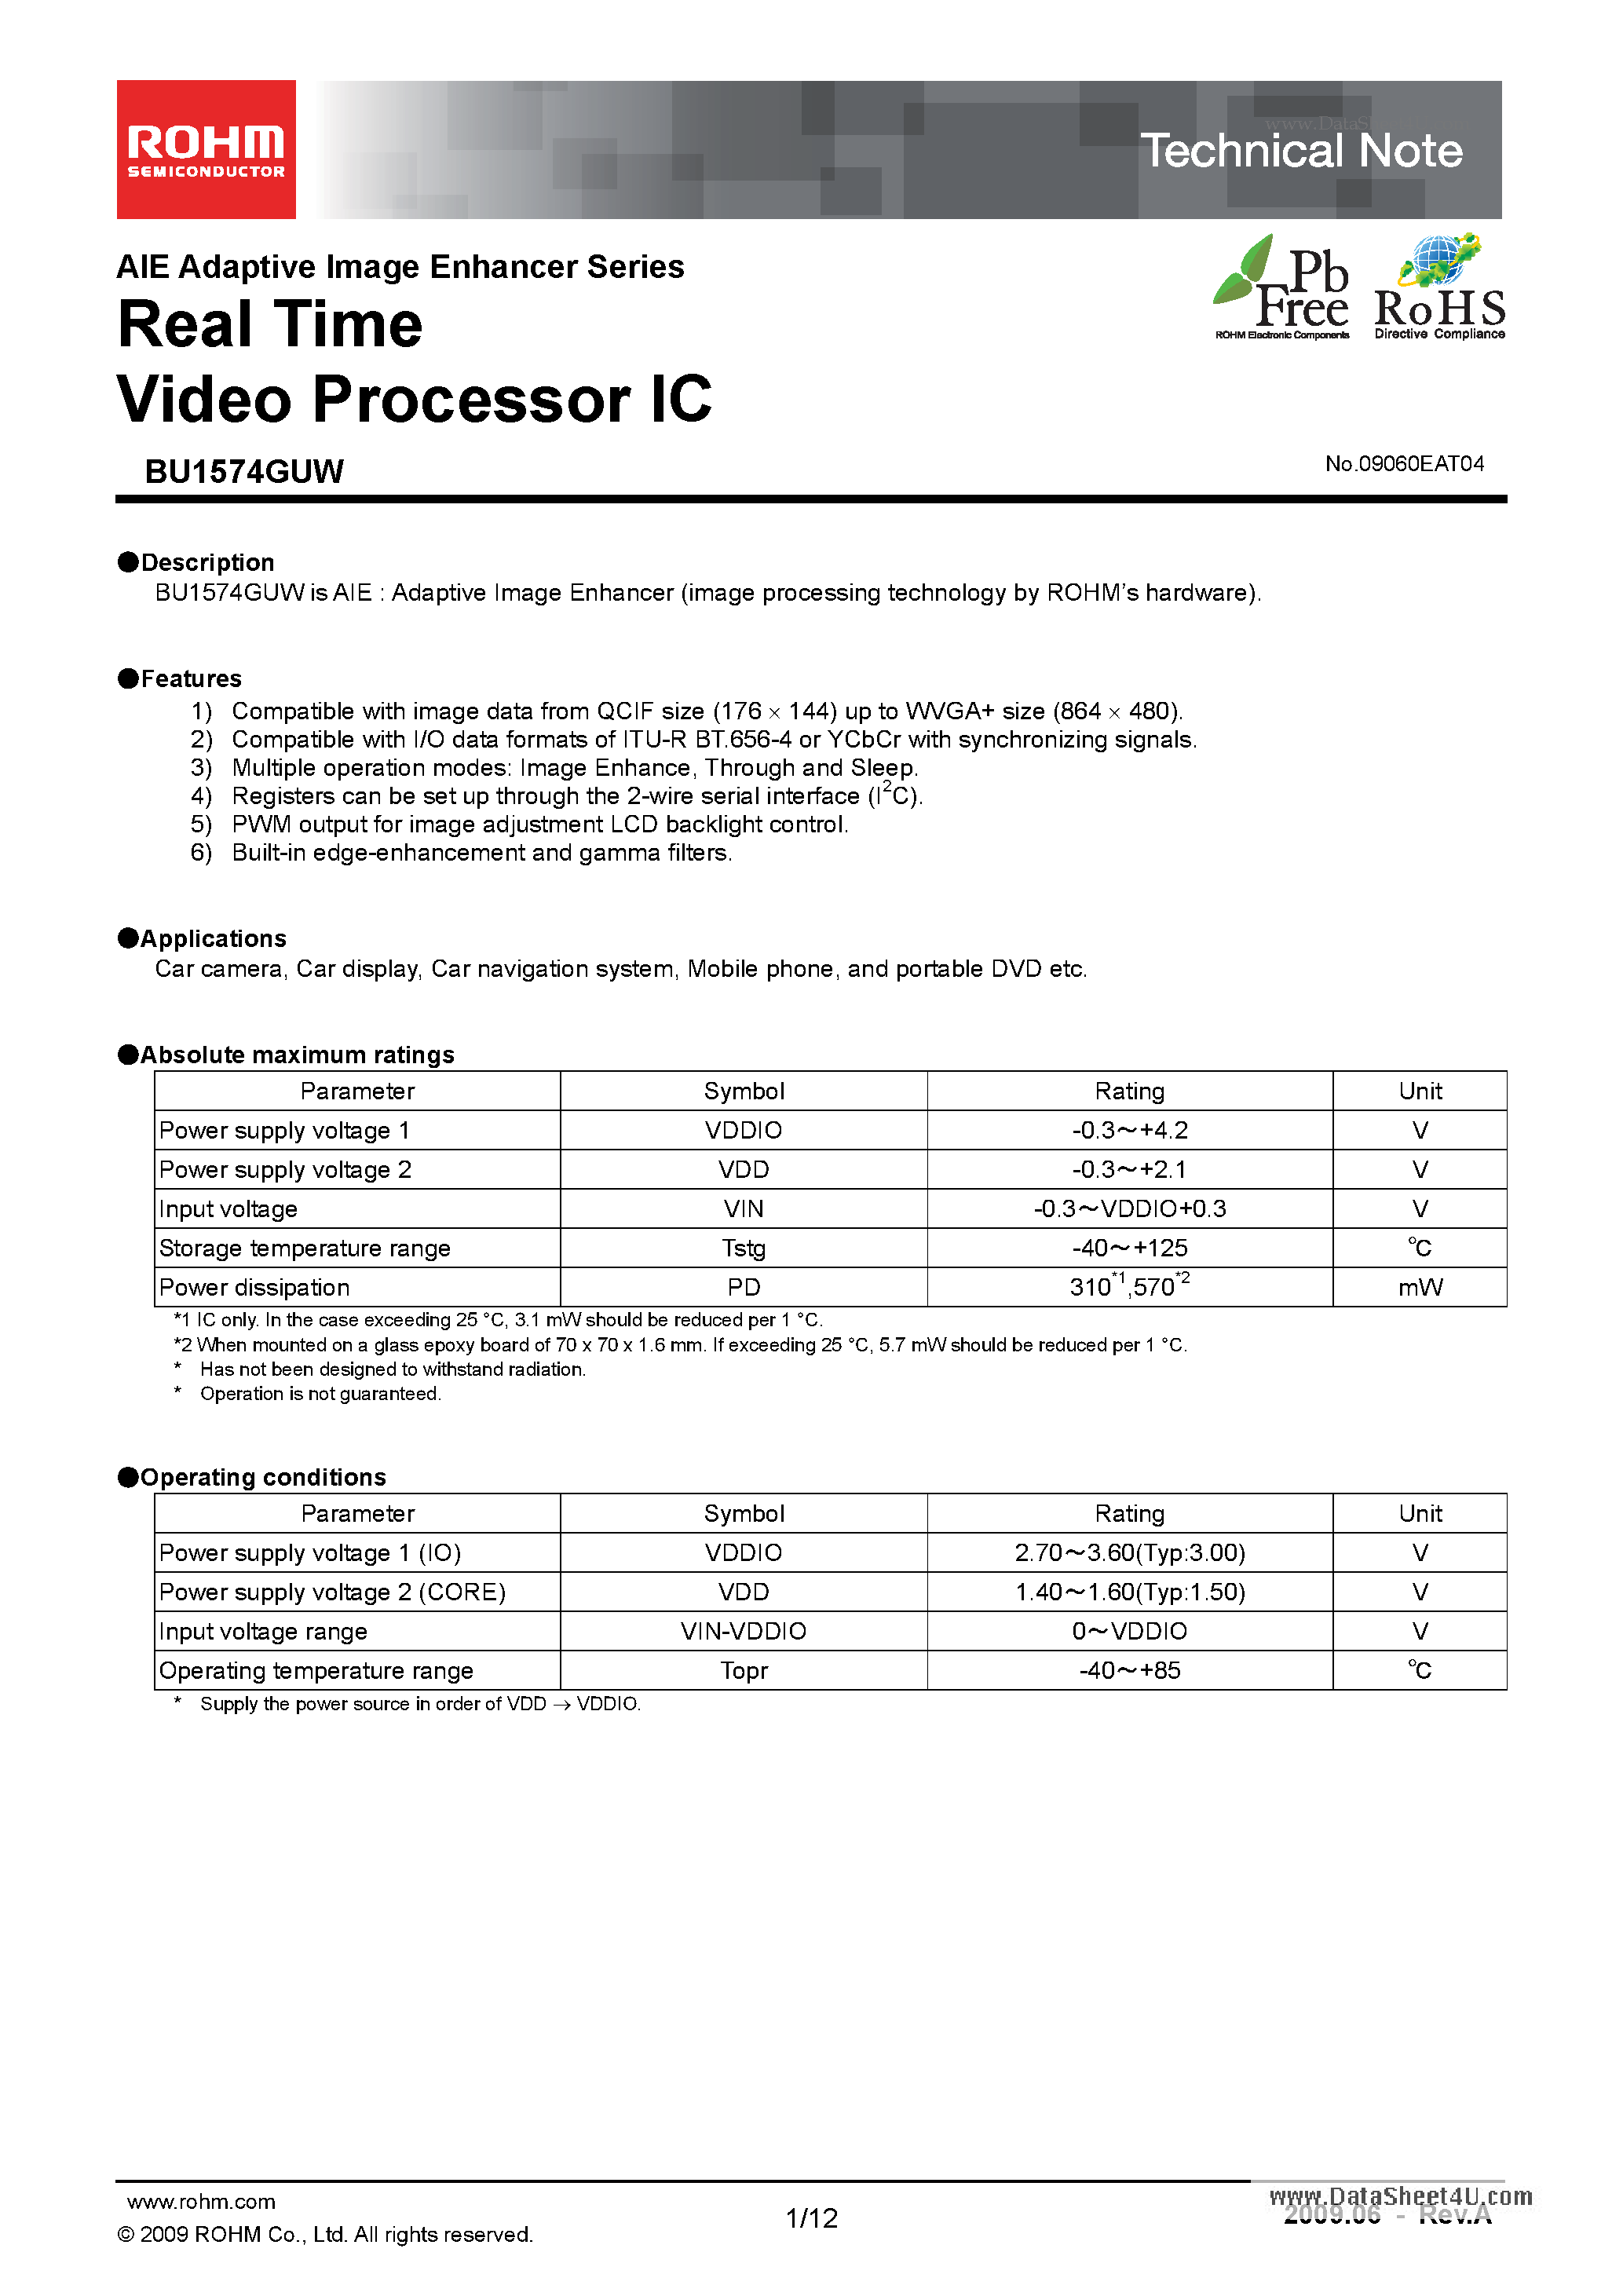 Даташит BU1574GUW-Real Time Video Processor ICs страница 1